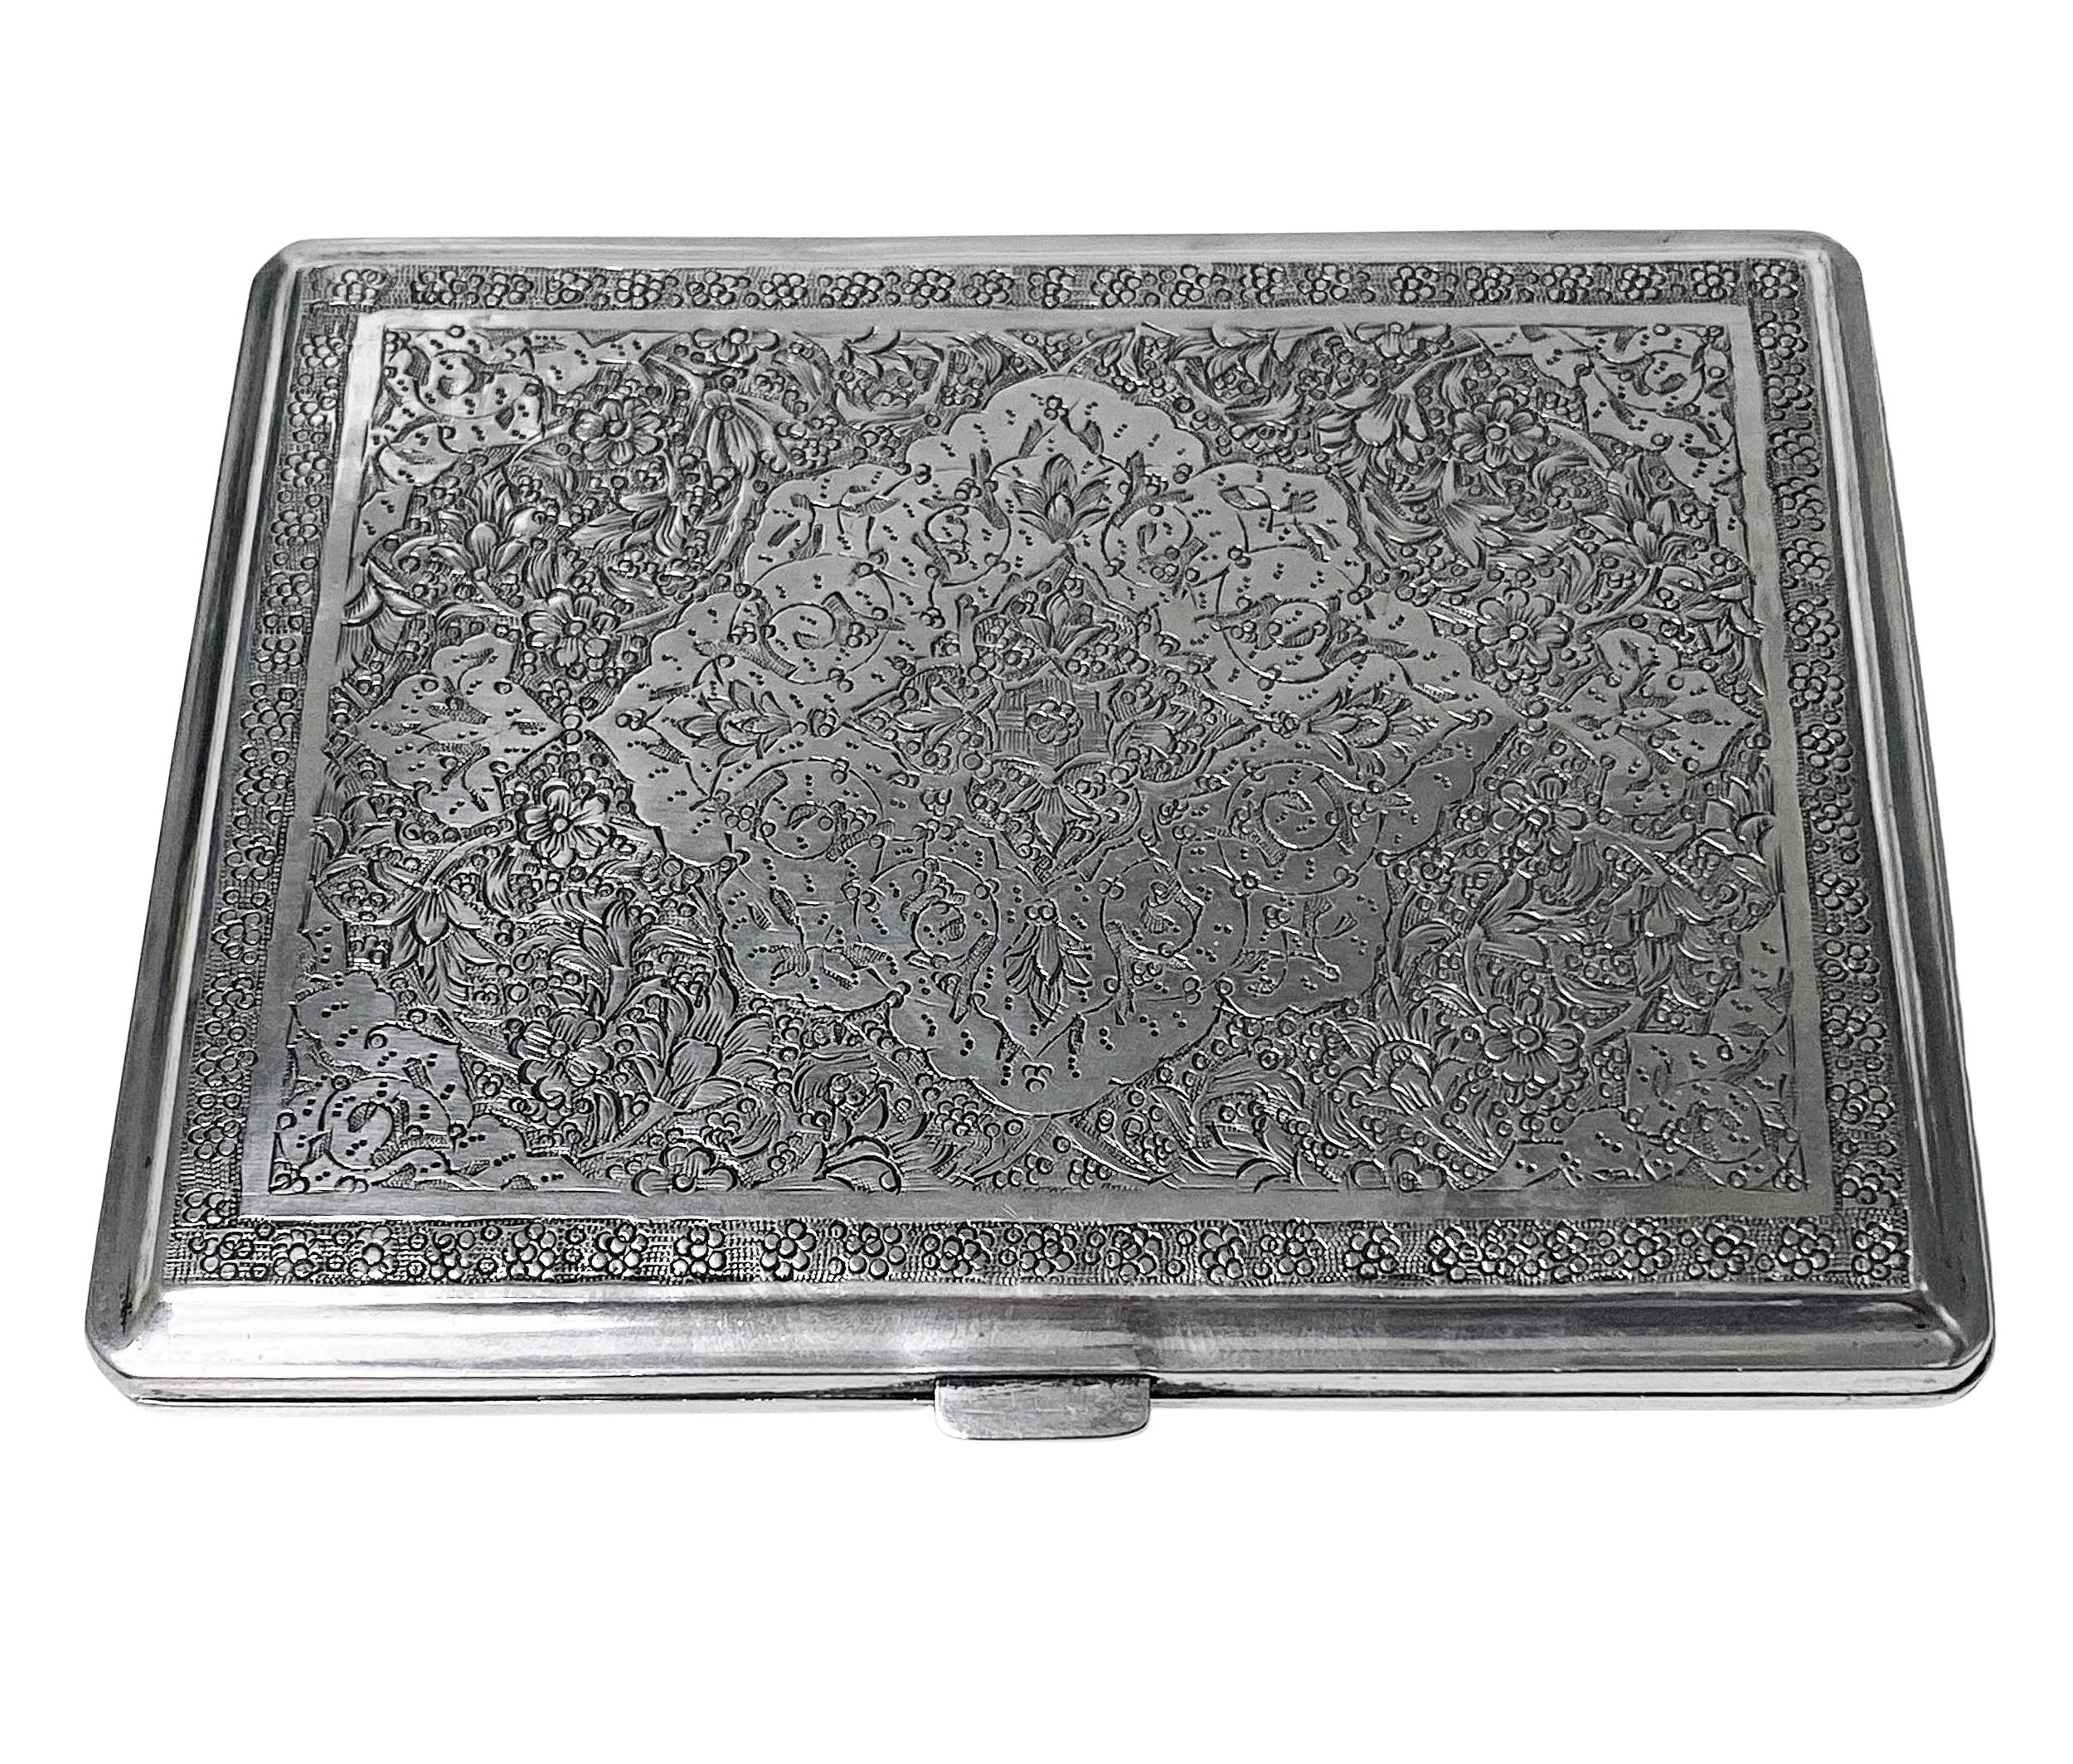 20th Century Antique Persian Silver Cigarette Case C.1920.